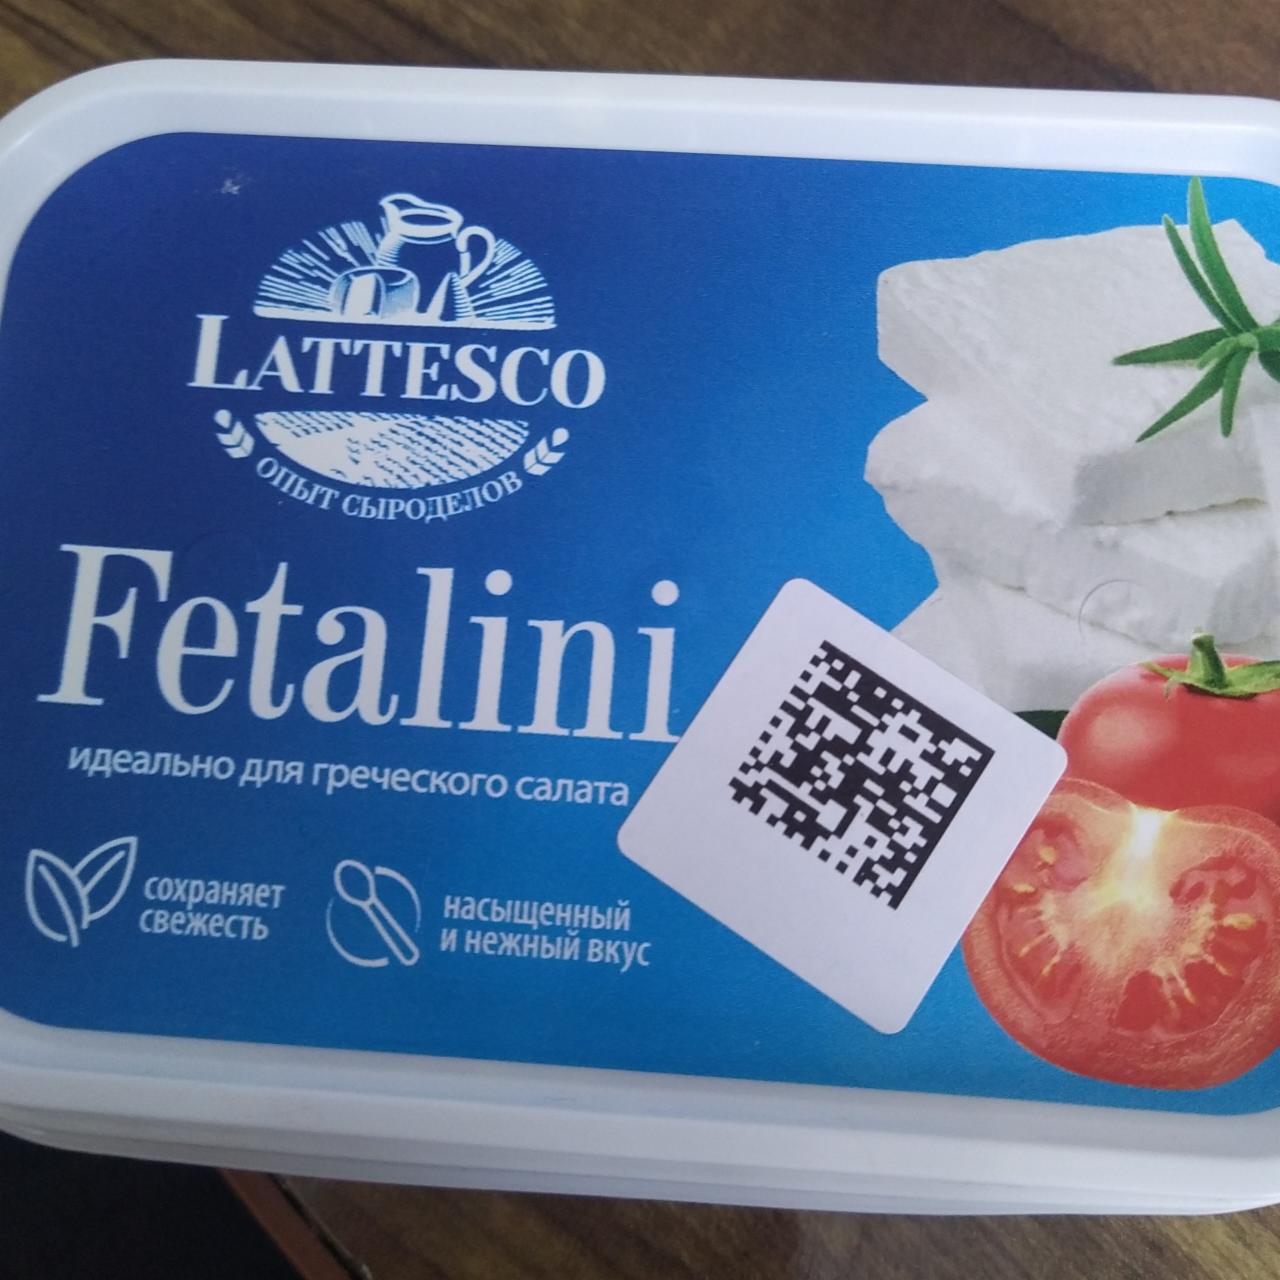 Фото - Творожный сыр Fetalini Lattesco